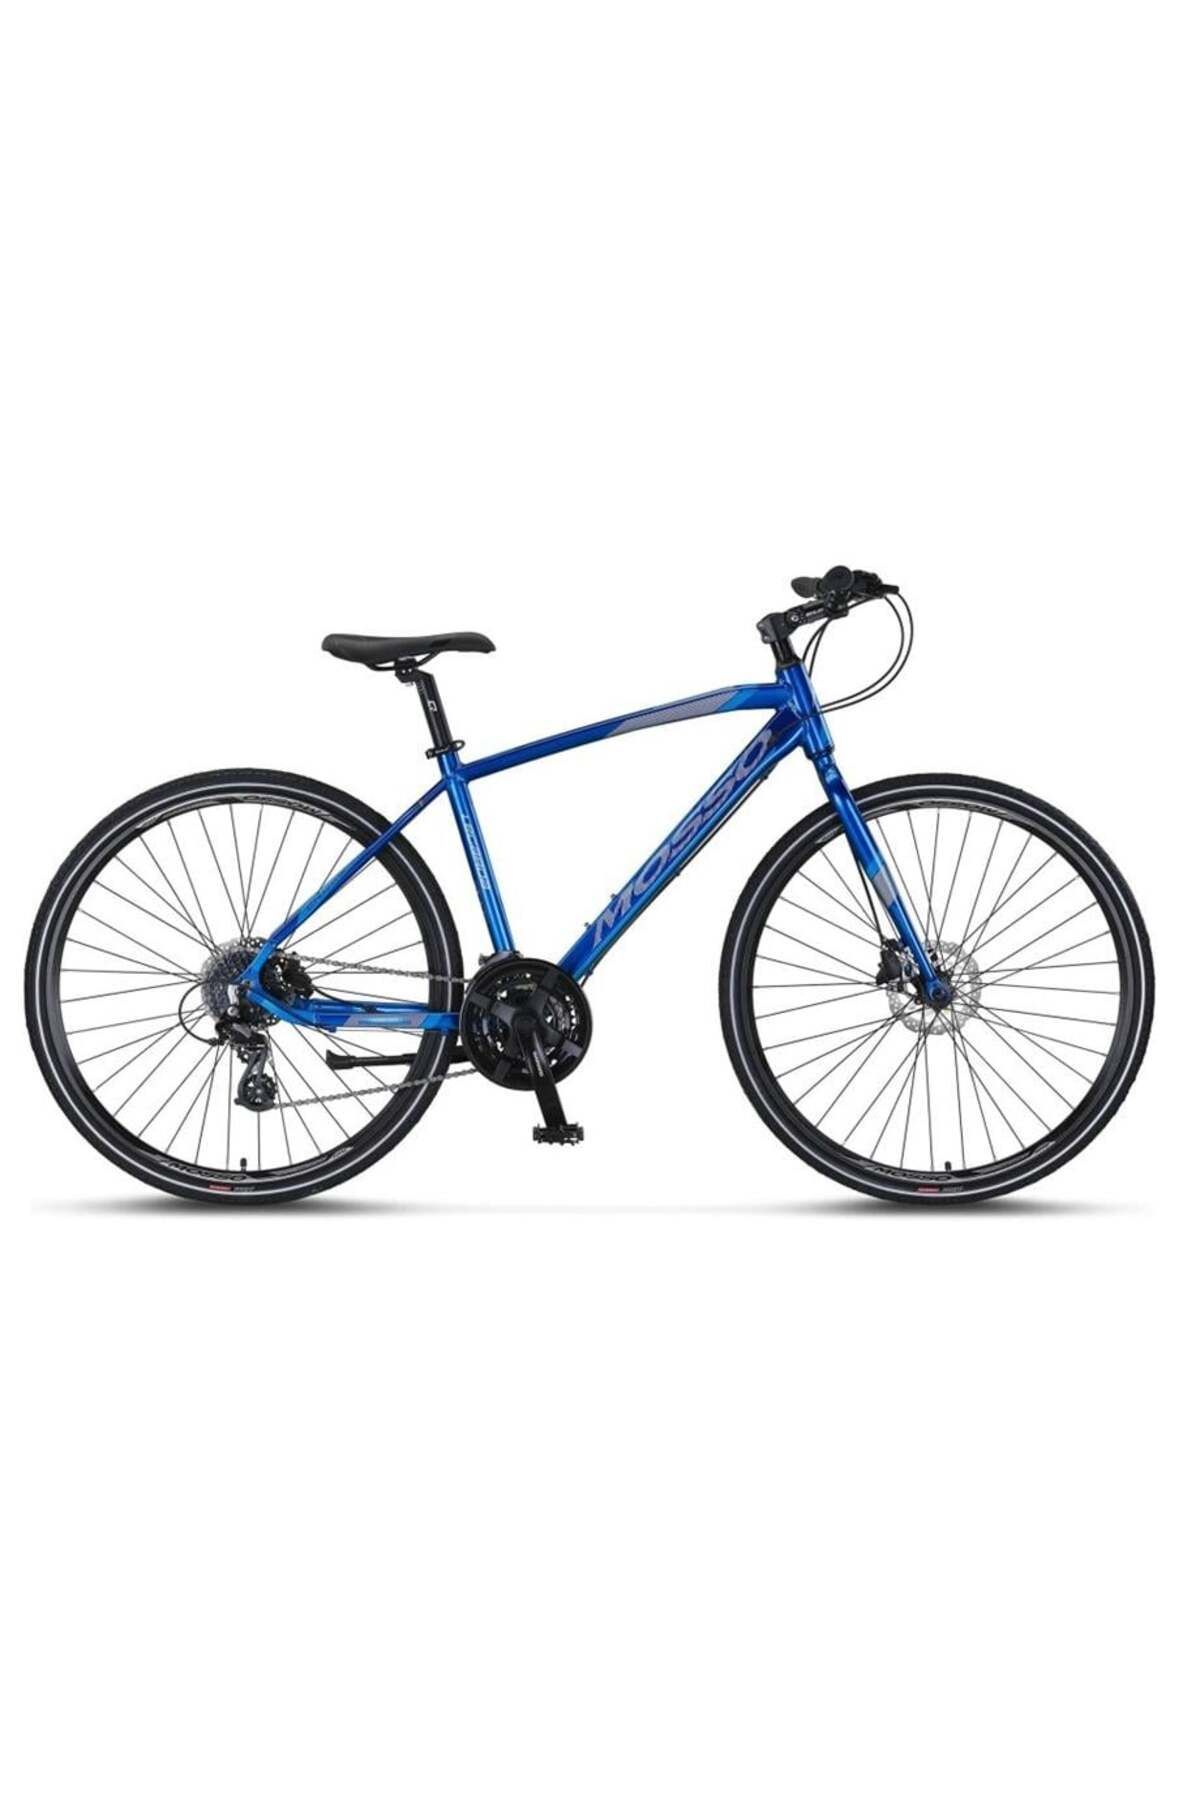 Mosso Legarda-2324-mdm-h Erkek Şehir Bisikleti 460h Hd 28 Jant 24 Vites Lacivert Mavi